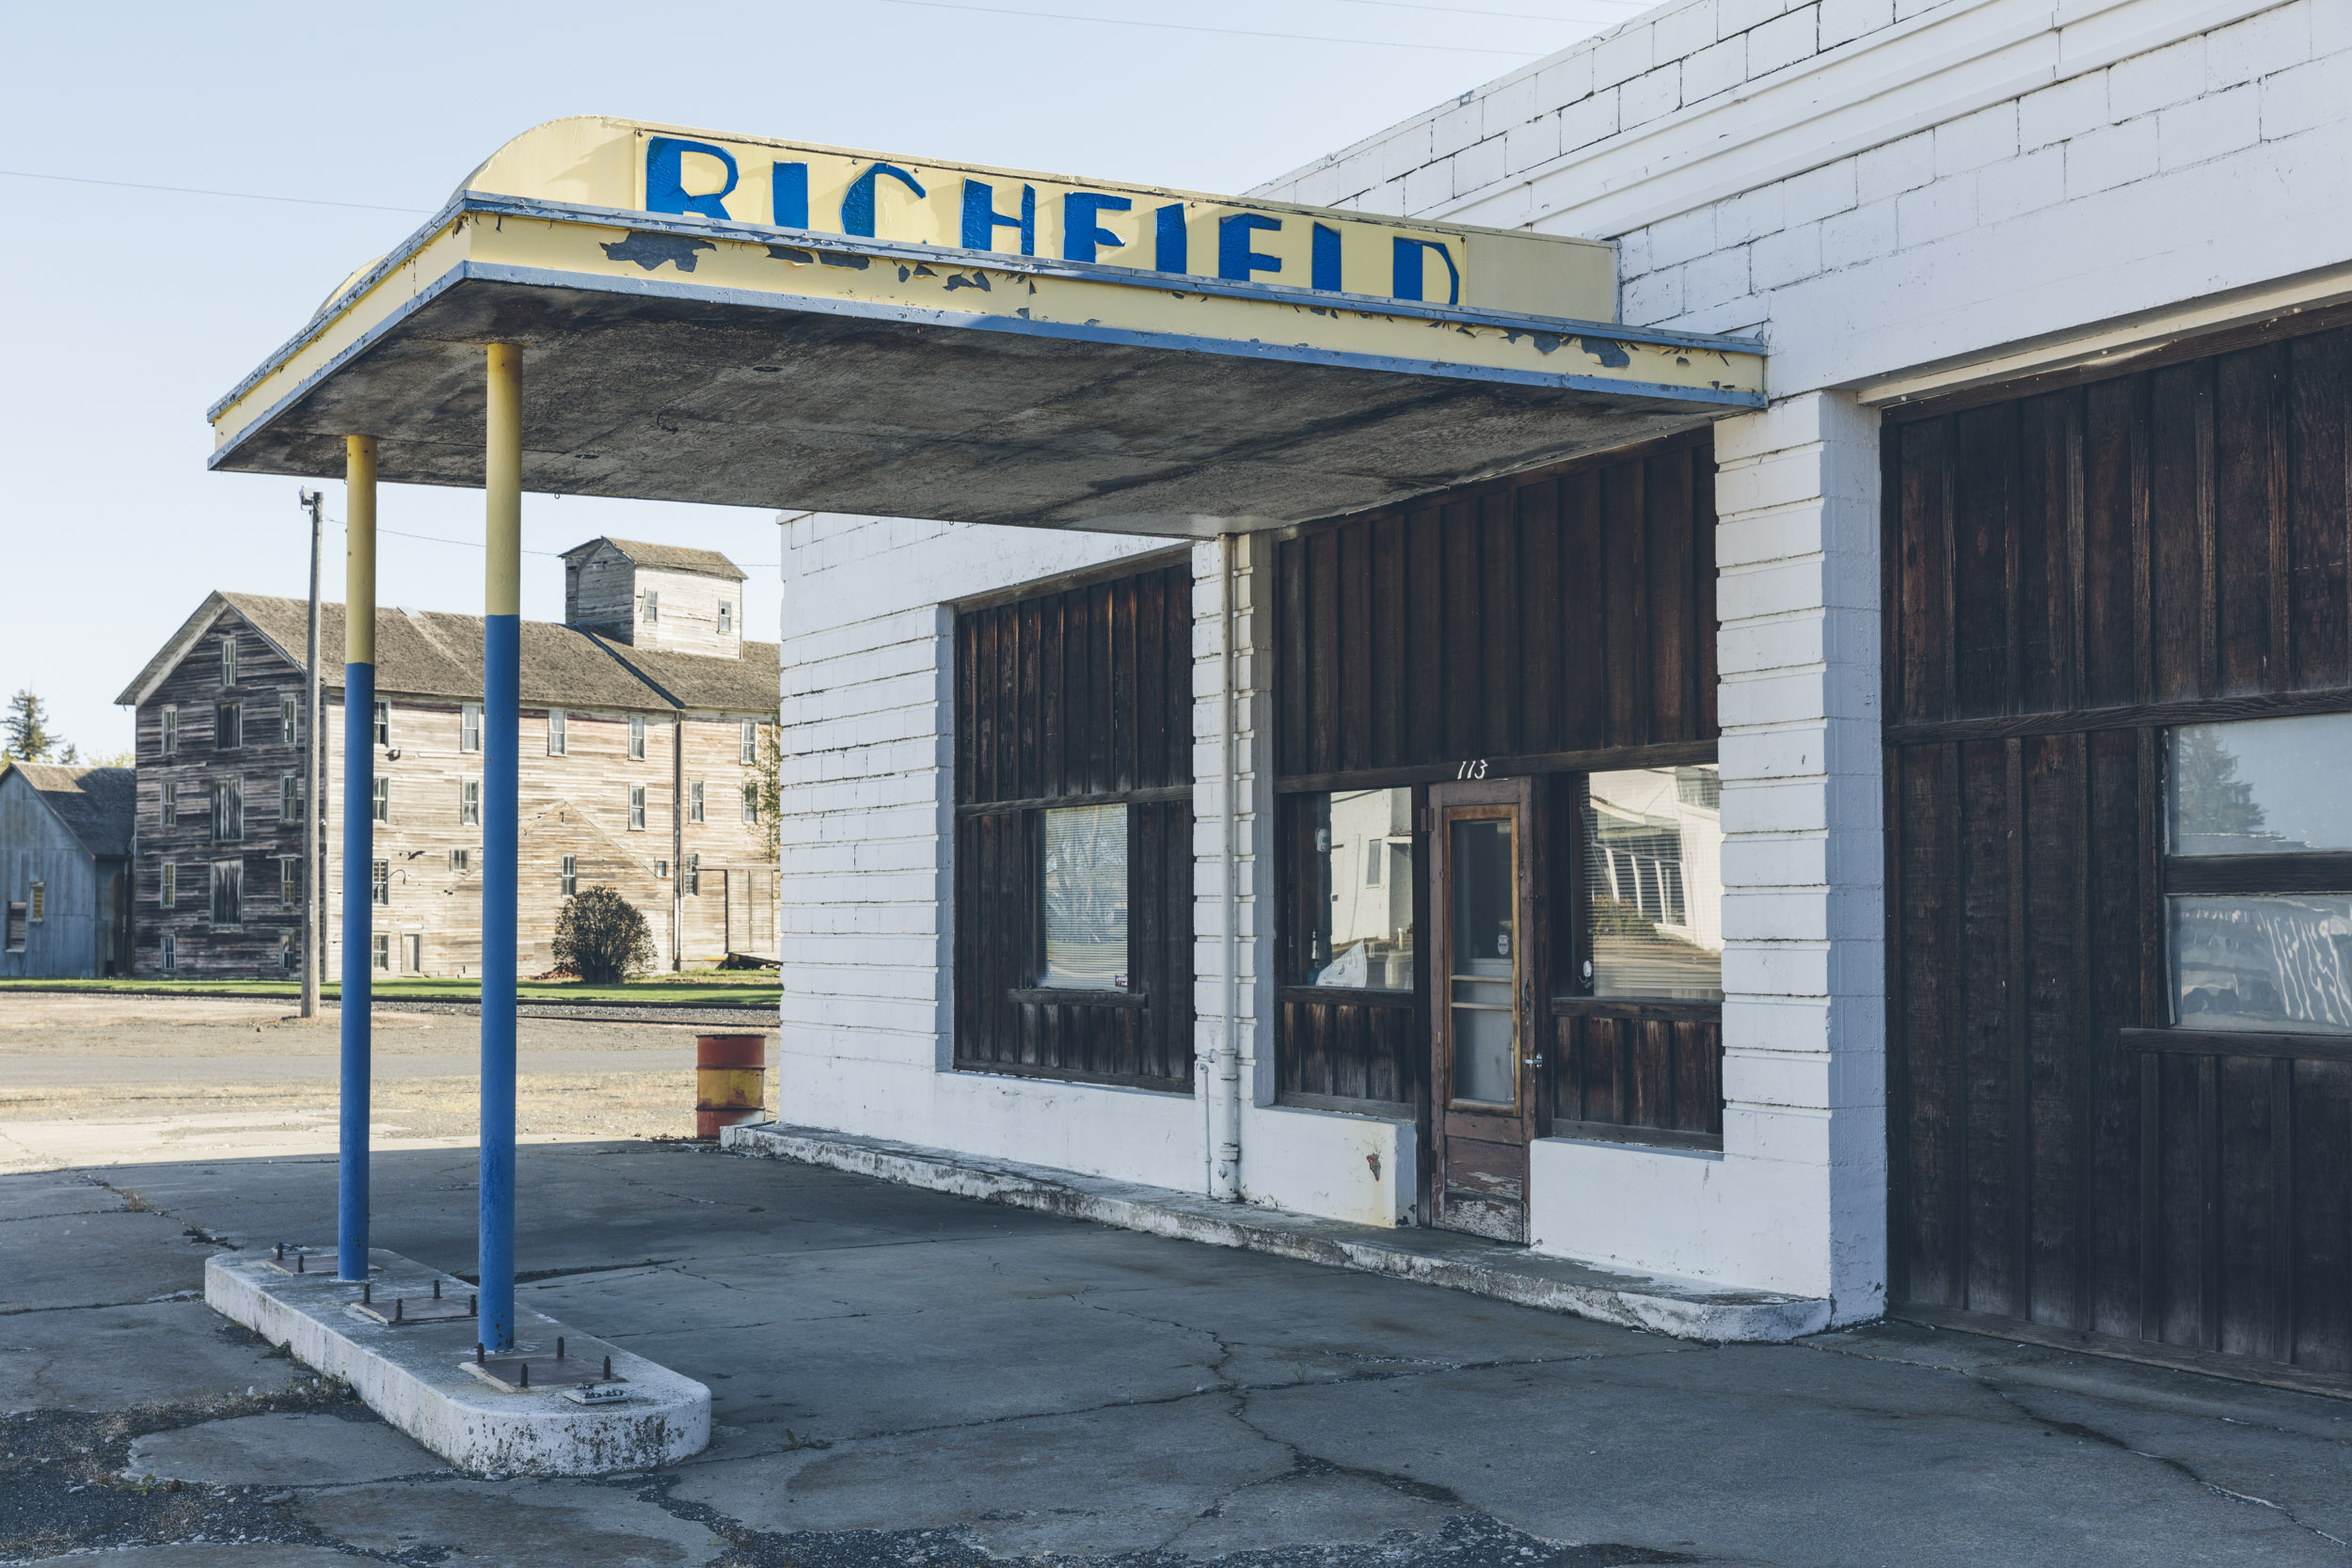 Richfield, Oakesdale, WA, 2021